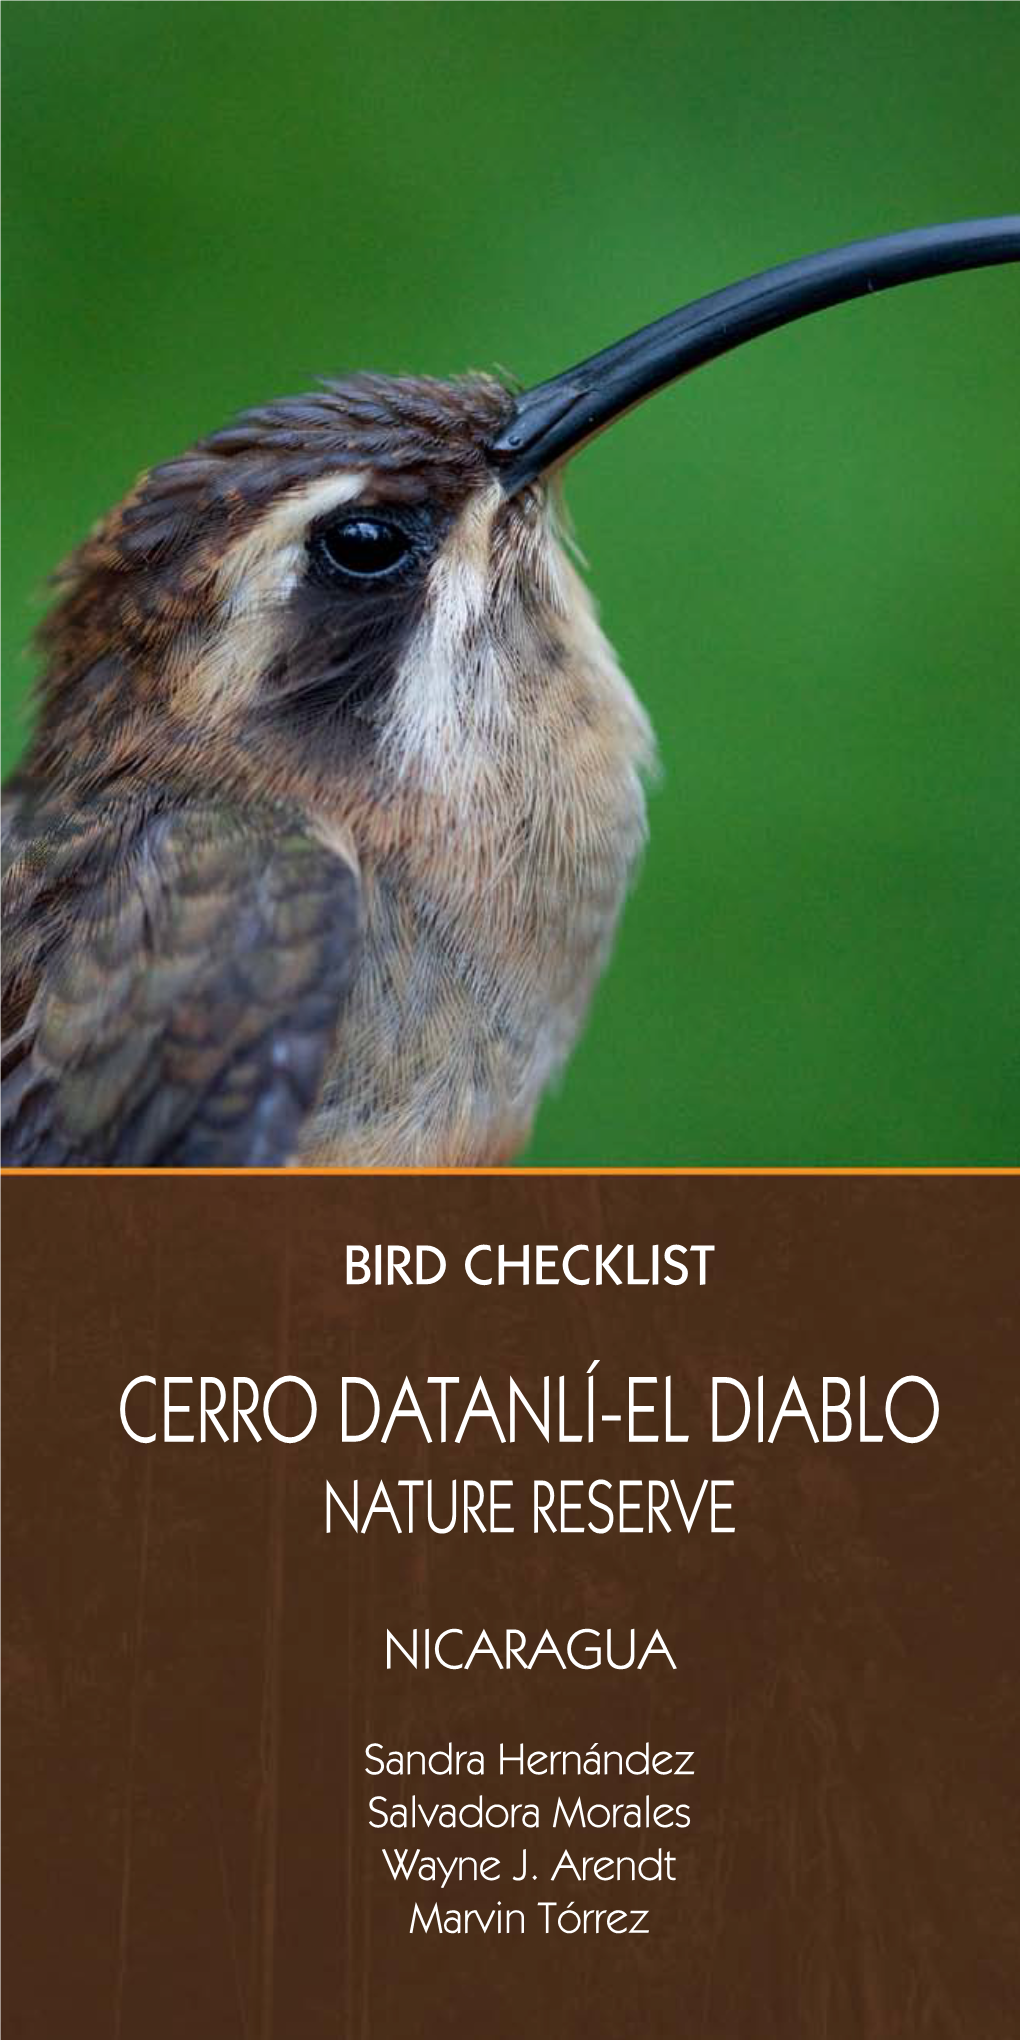 Cerro Datanlí-El Diablo Nature Reserve